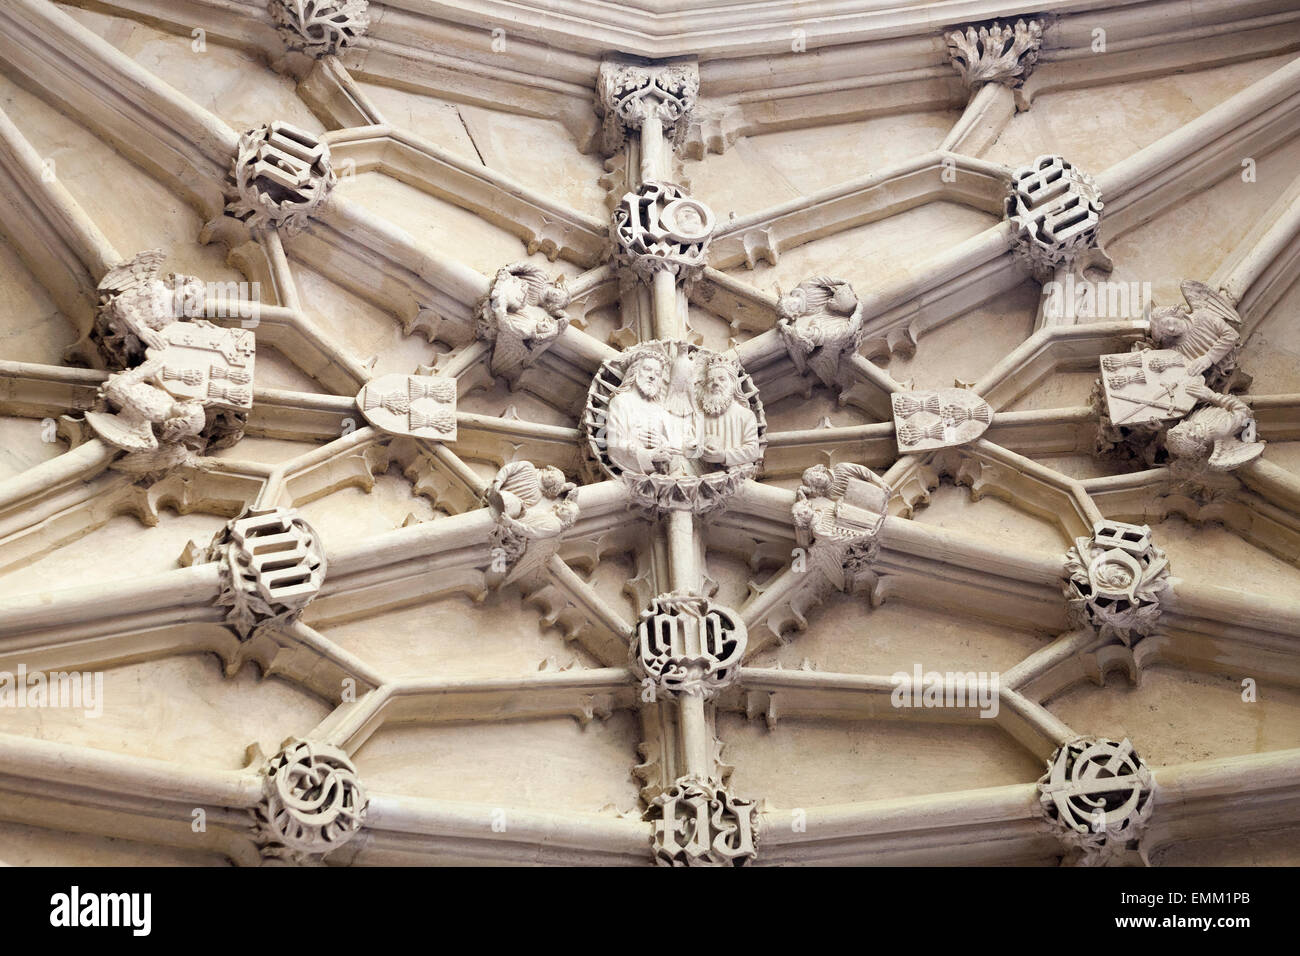 Détail du plafond, 'Divinity School', [Bodleian Library], Oxford, England, UK Banque D'Images